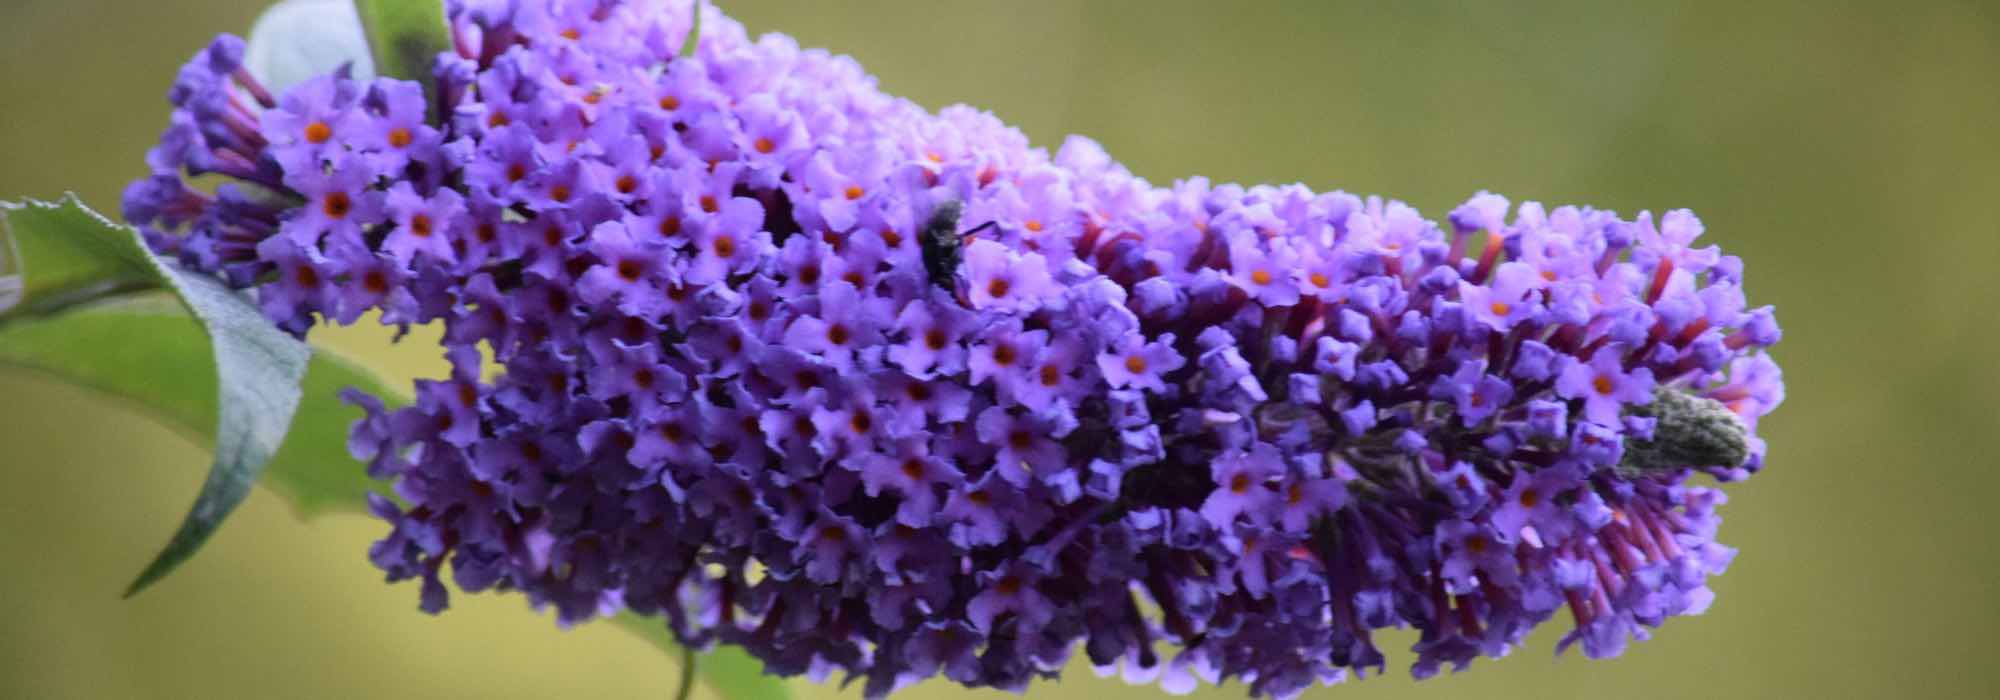 Les meilleurs Buddleias violets, mauves et pourpres pour votre jardin